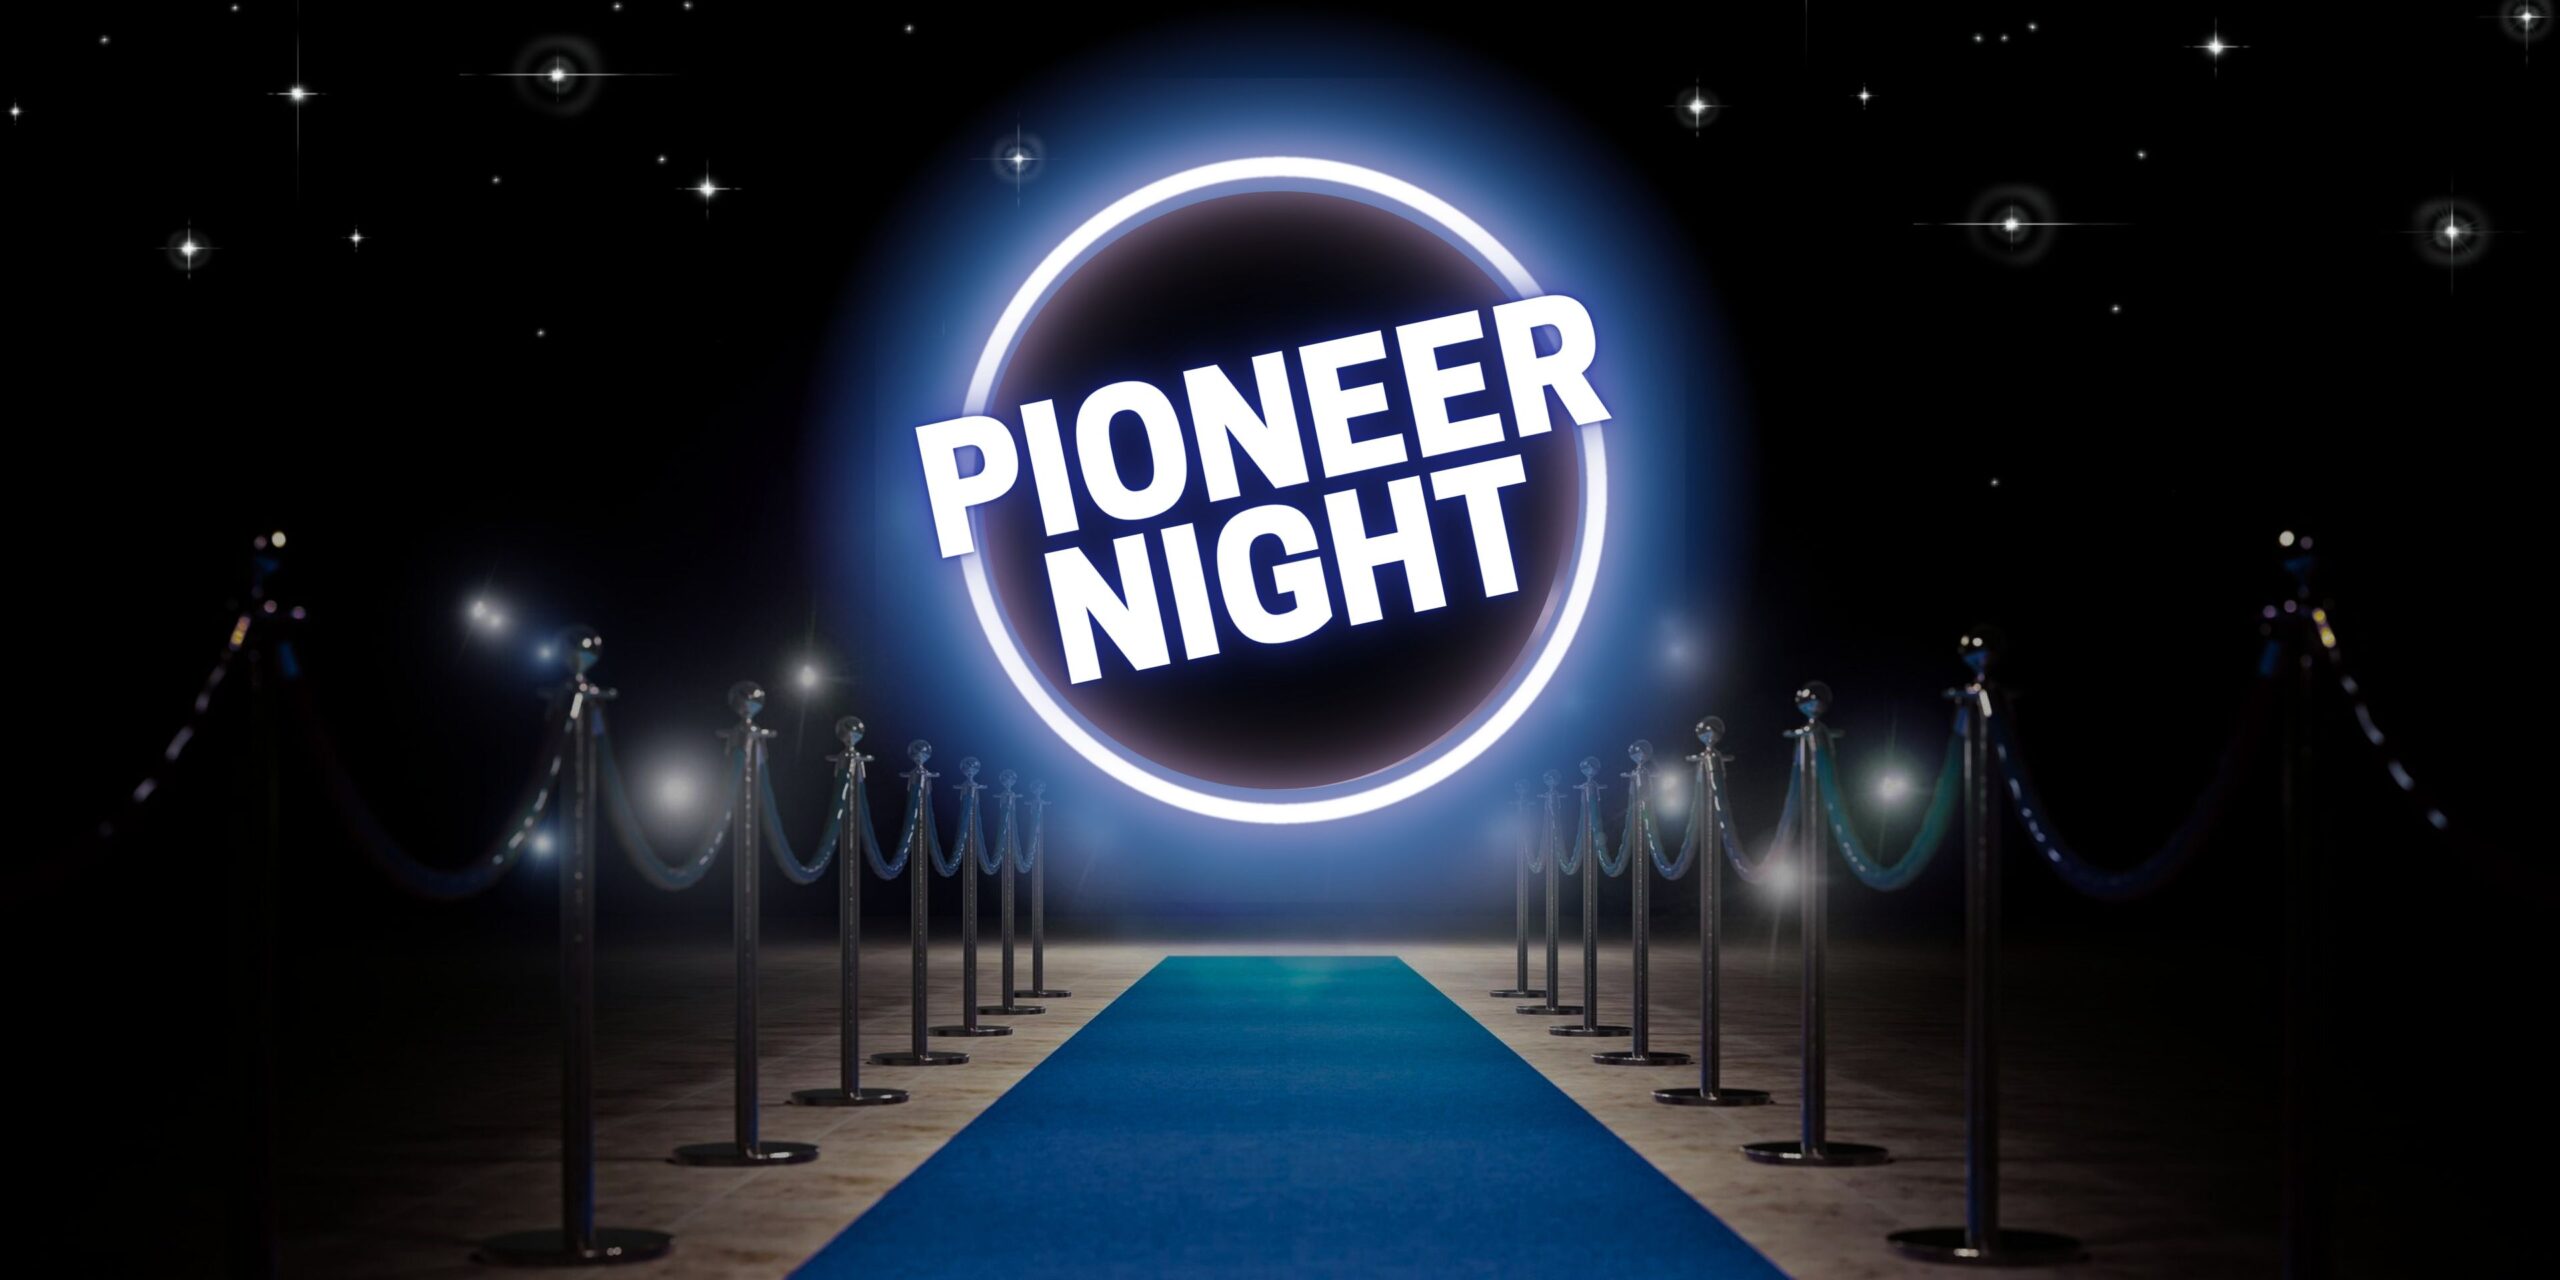 Pioneer Night